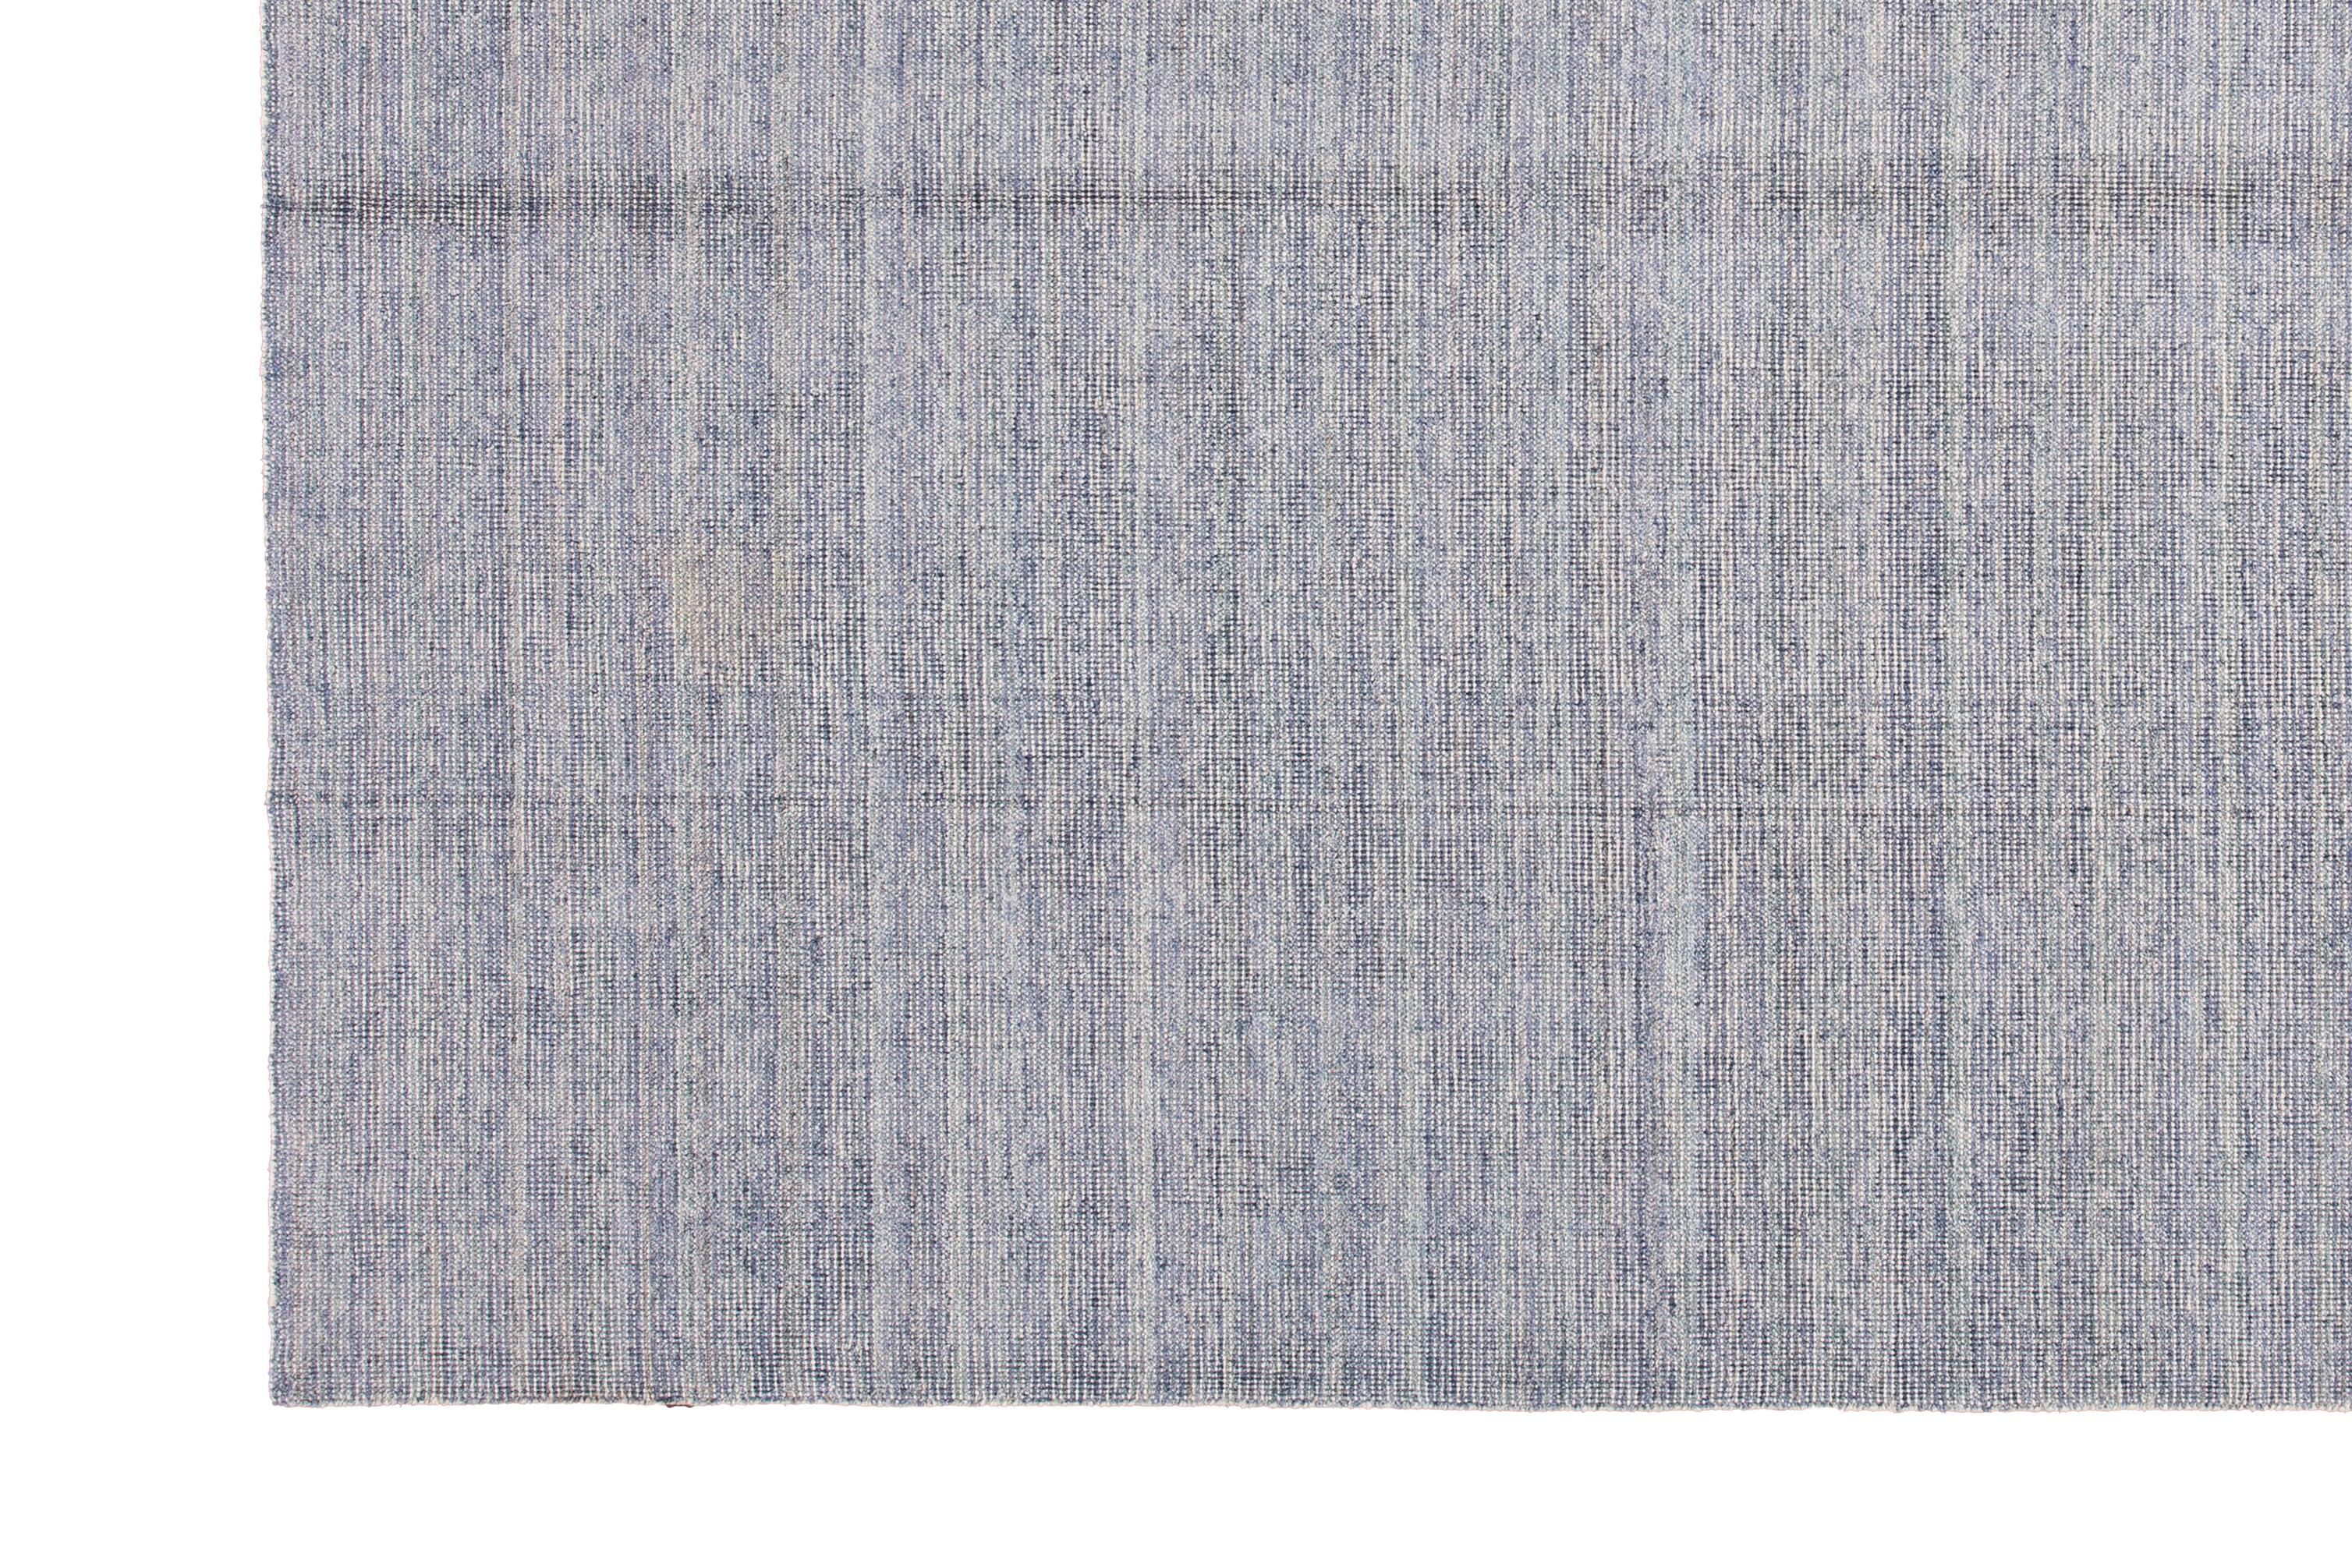 Schöner, moderner, handgefertigter indischer Boho-Teppich aus Bambus und Seide mit einem hellblauen und elfenbeinfarbenen Feld. Dieser Teppich aus der Boho-Kollektion hat ein durchgängig unifarbenes Muster.

Dieser Teppich misst: 9'0